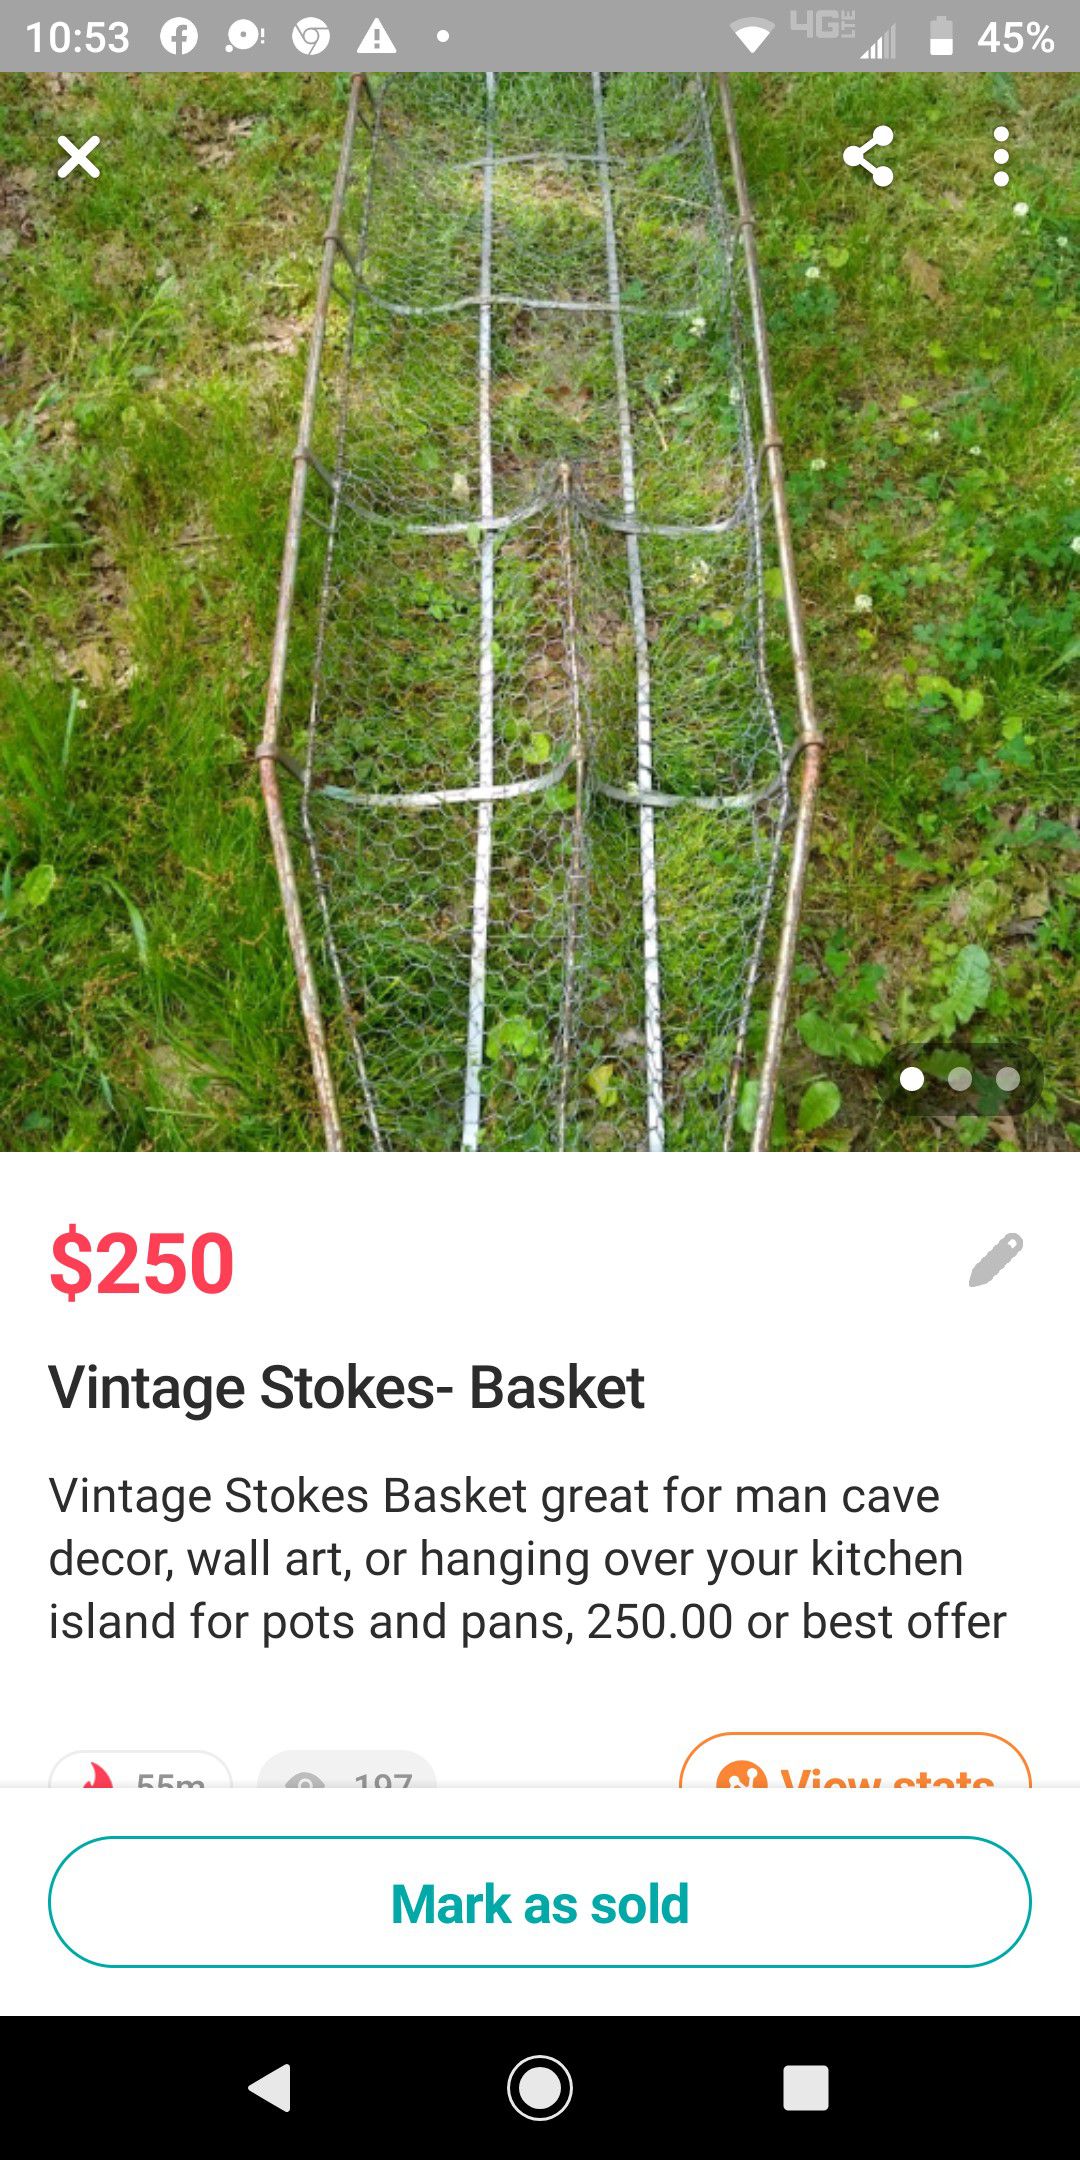 Vintage Stokes Basket